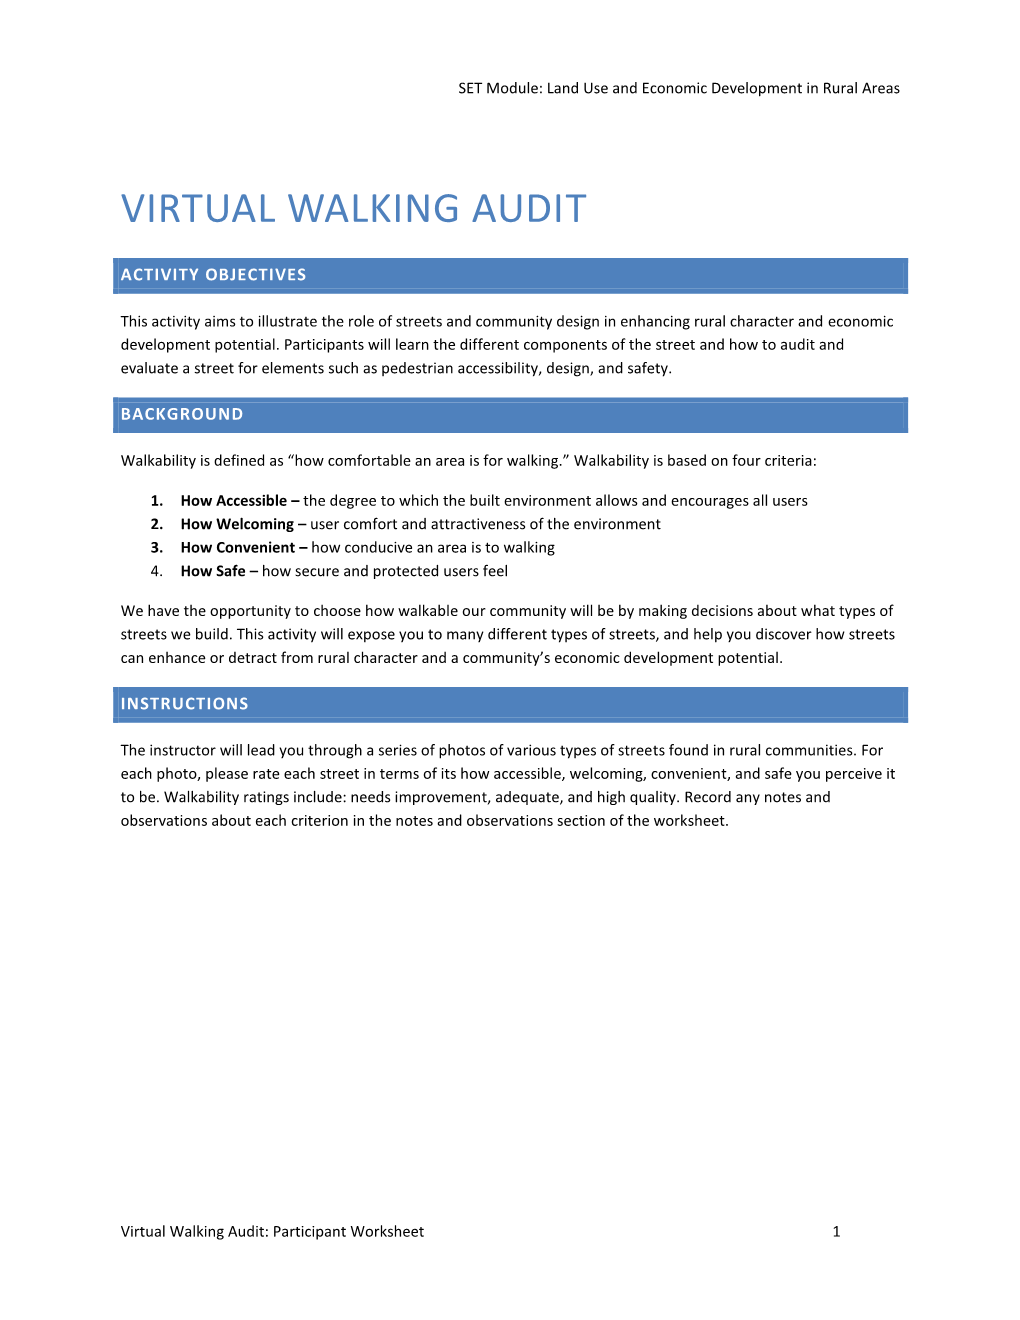 Virtual Walking Audit